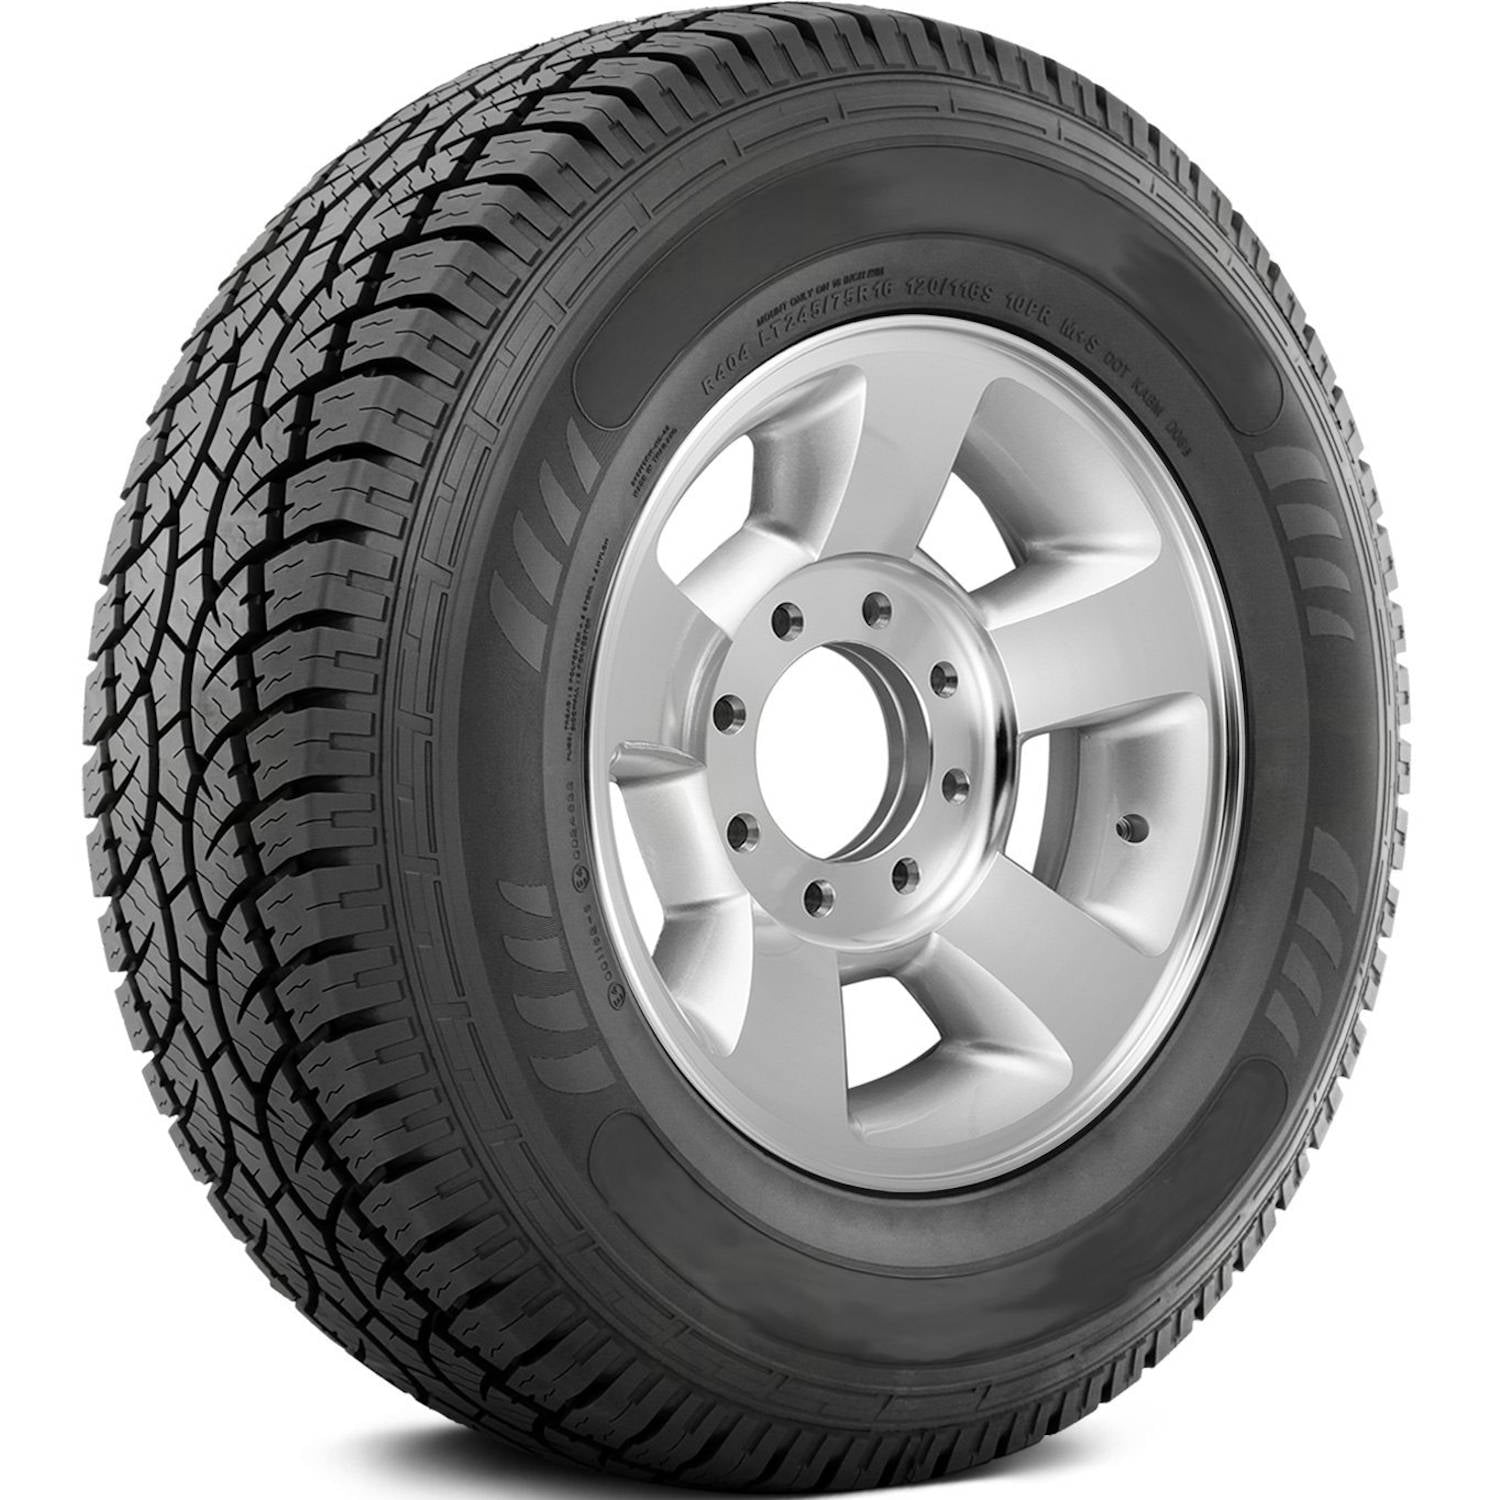 AMERICUS RUGGED ALL TERRAIN LT235/75R15 (28.9X9.3R 15) Tires